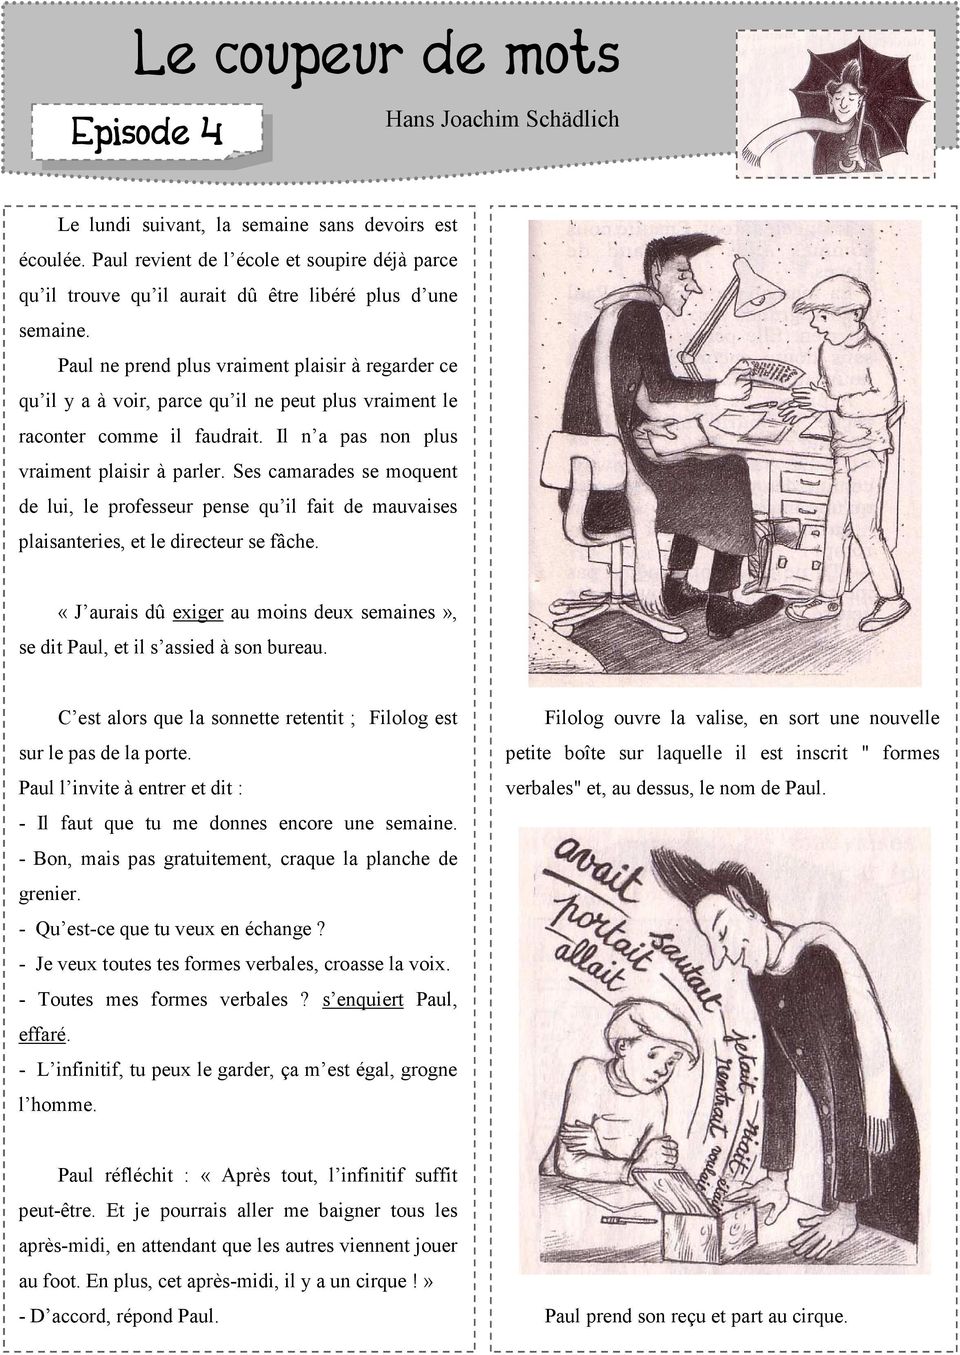 Le Coupeur De Mots Questions Et Reponses Le coupeur de mots. Episode 2. Hans Joachim Schädlich - PDF Free Download